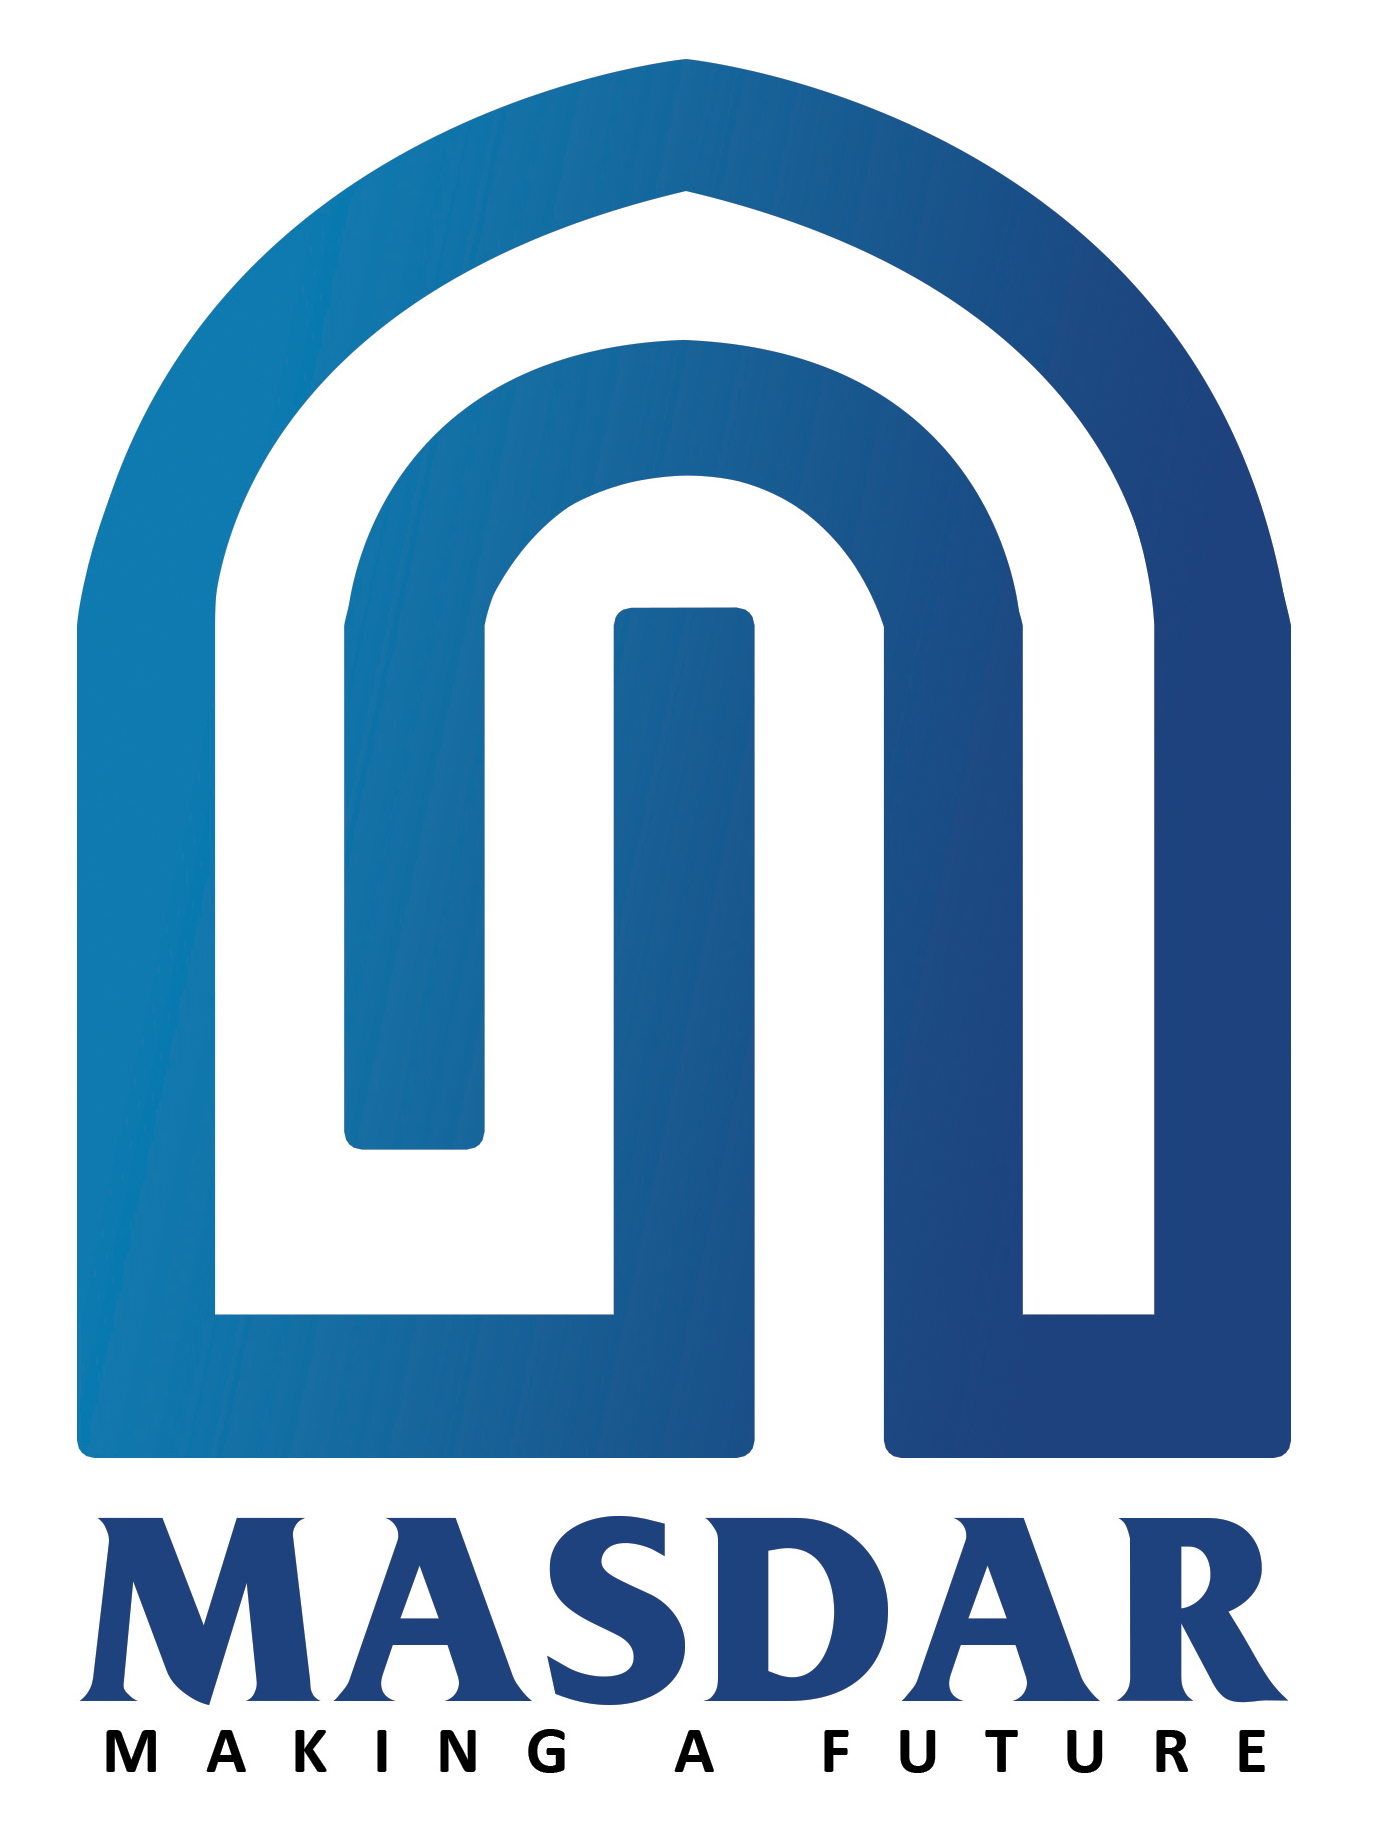 MASDAR MODEL STUDENTS VILLAGE